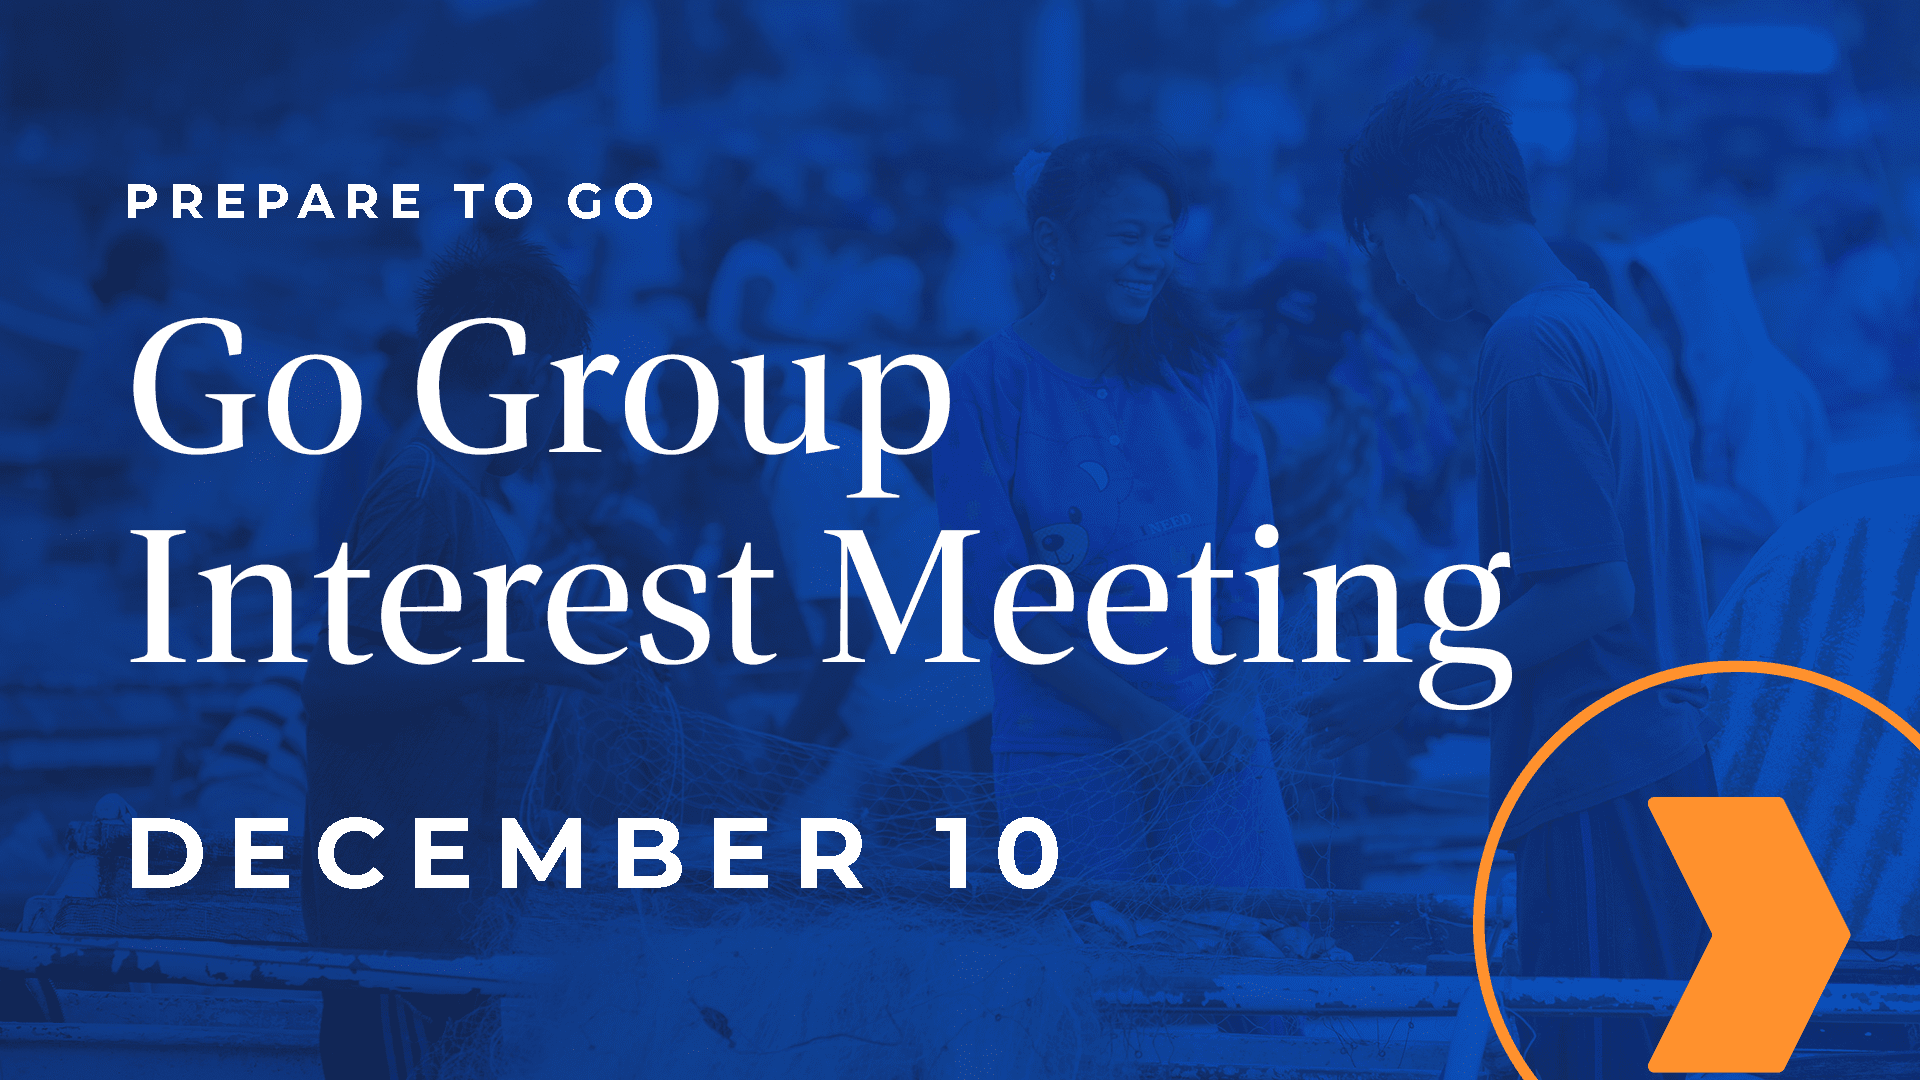 Go Group Interest Meeting - Go Group Interest Meeting